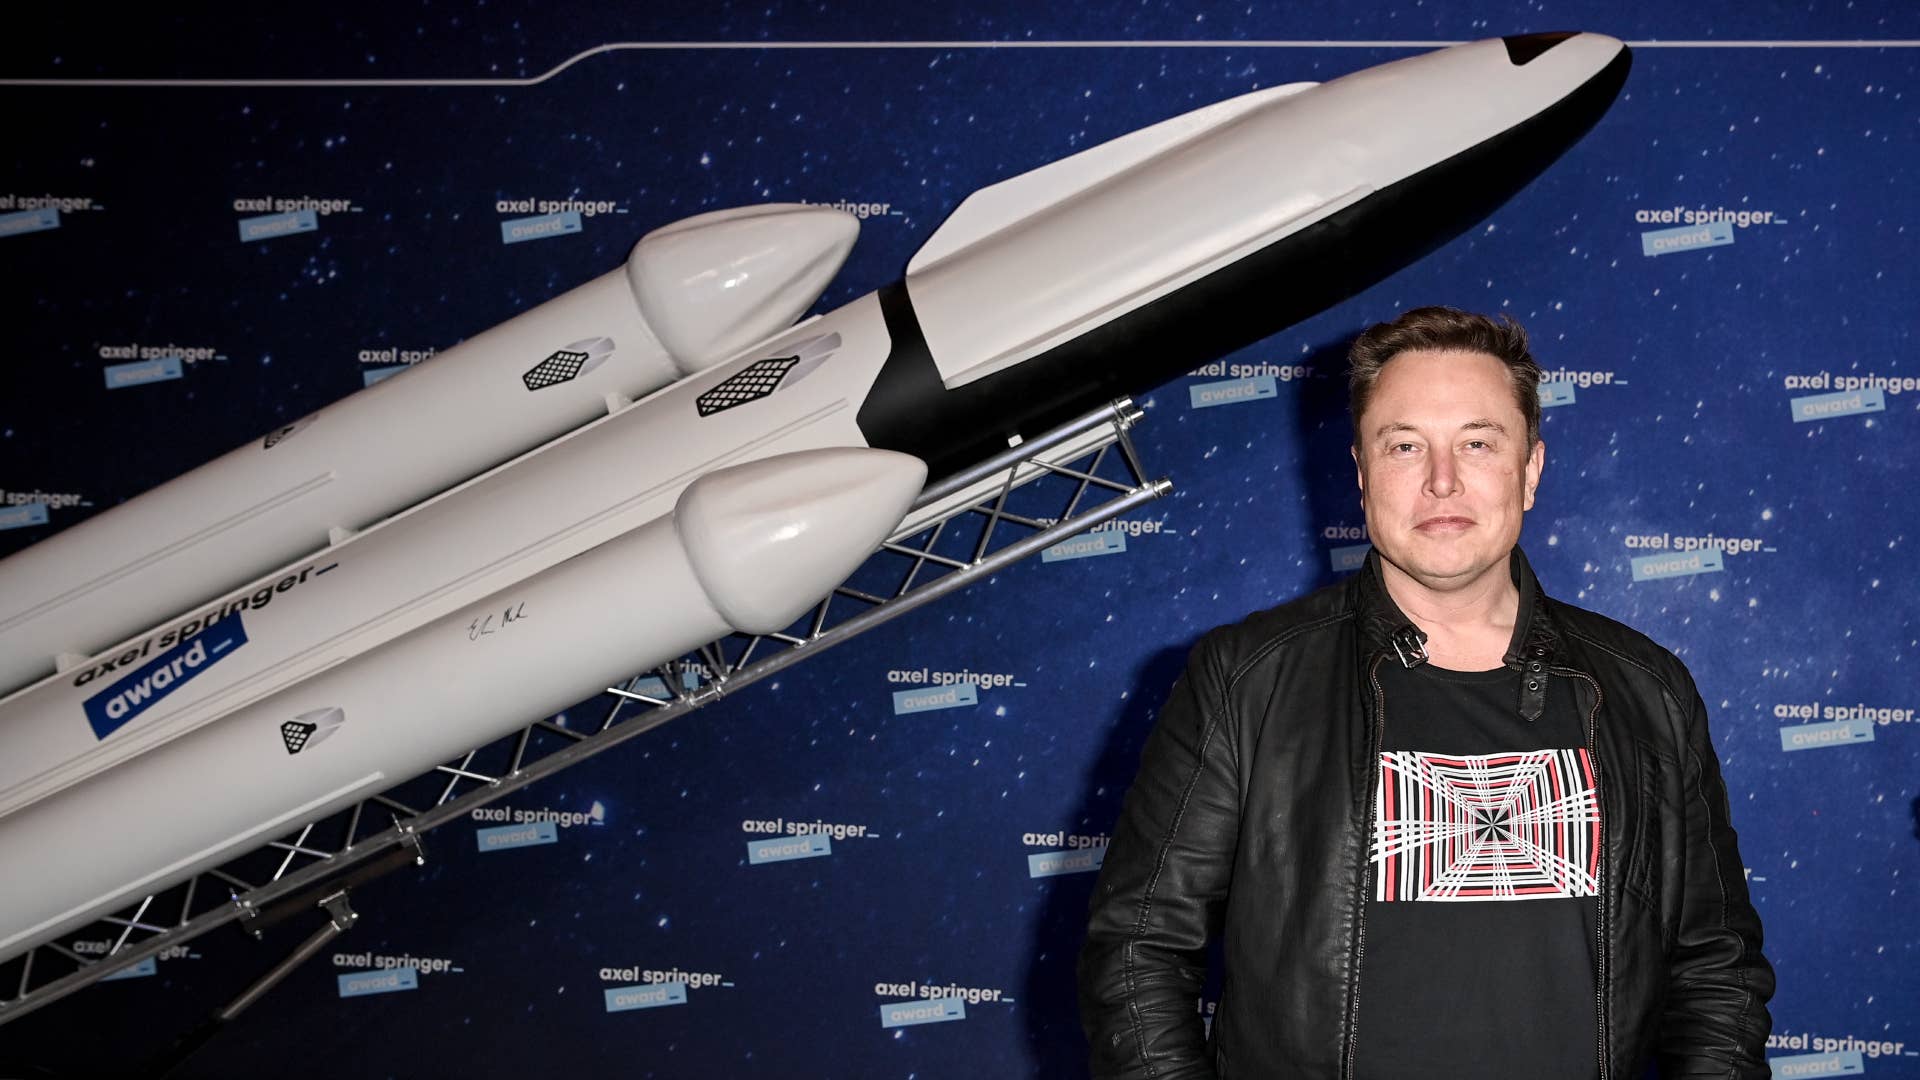 Elon Musk is seen posing in front of a rocket